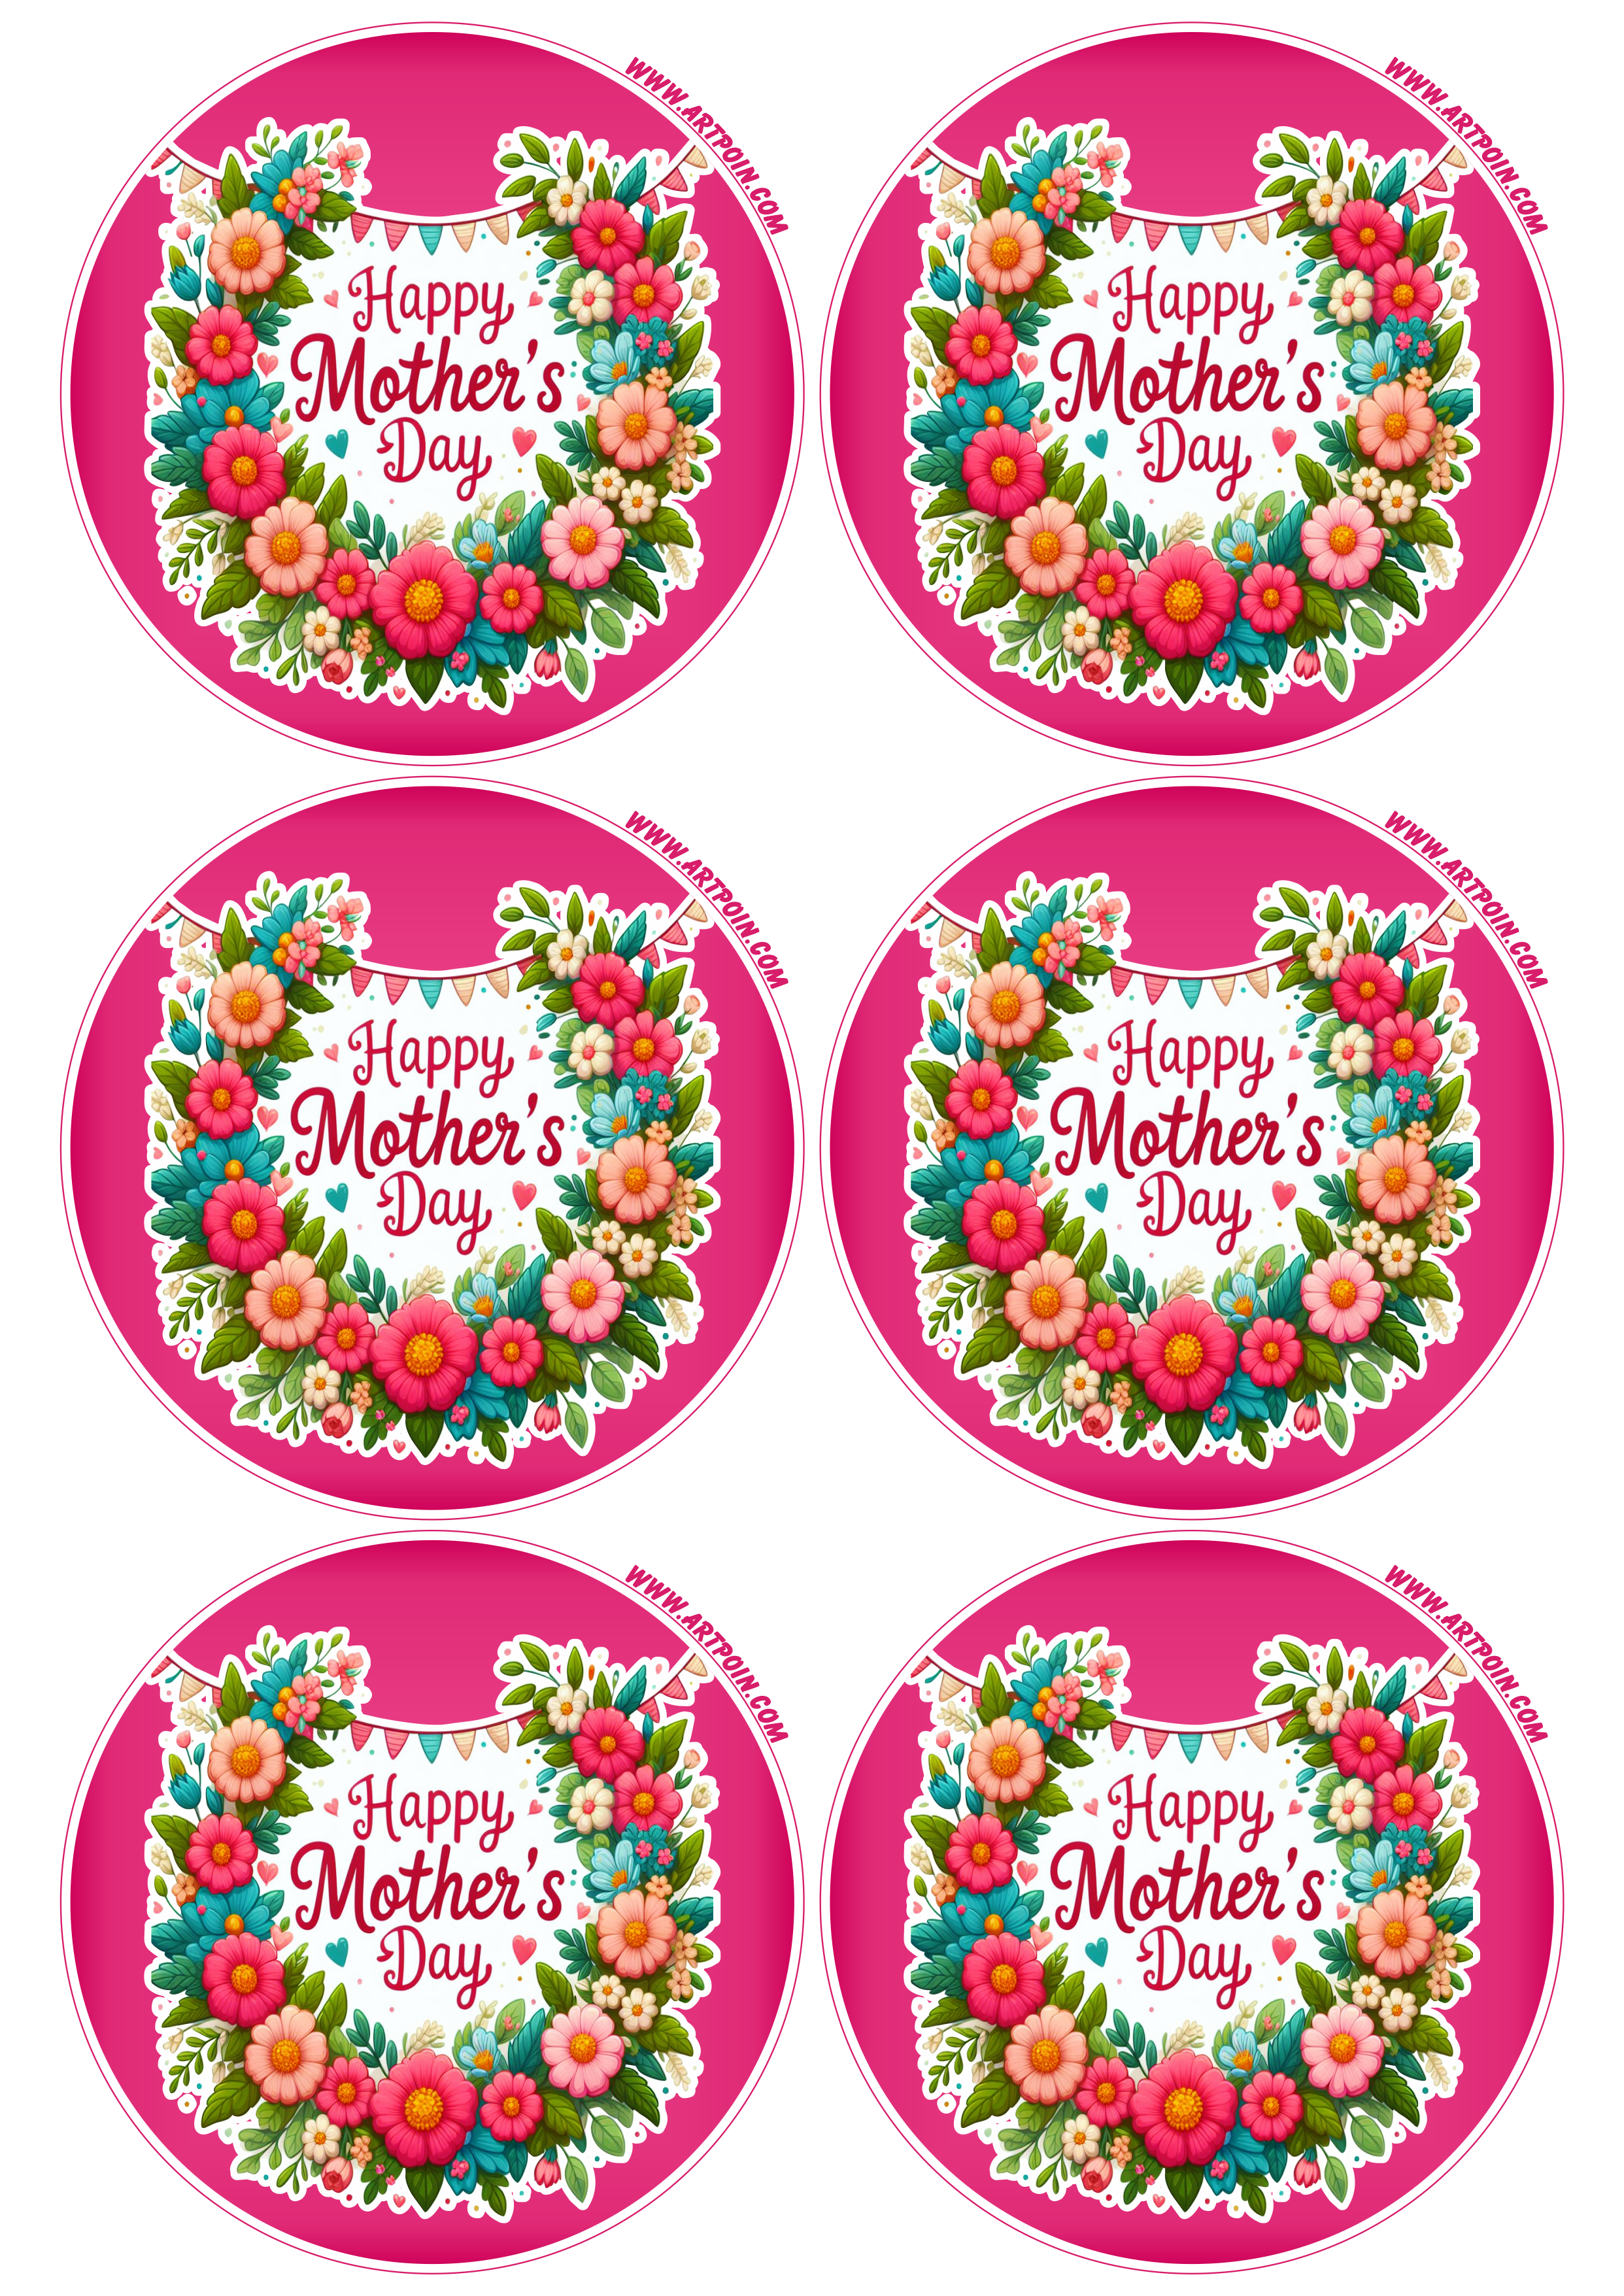 Happy mother’s day adesivo para decoração 6 imagens png